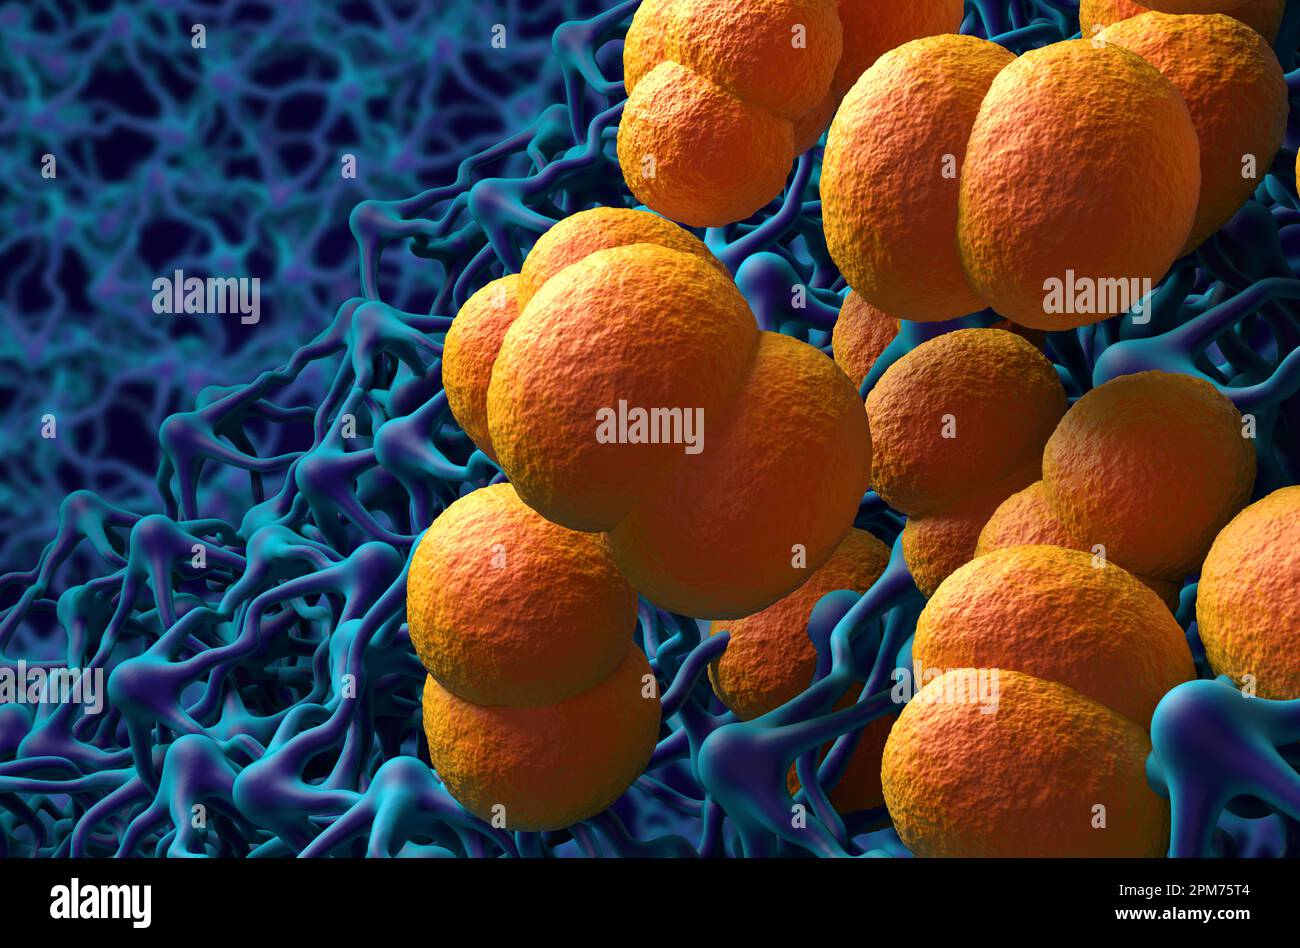 Neisseria meningitidis (meningococcus) bacterias in the brain (meningitis infection) – 3d illustration closeup view Stock Photo